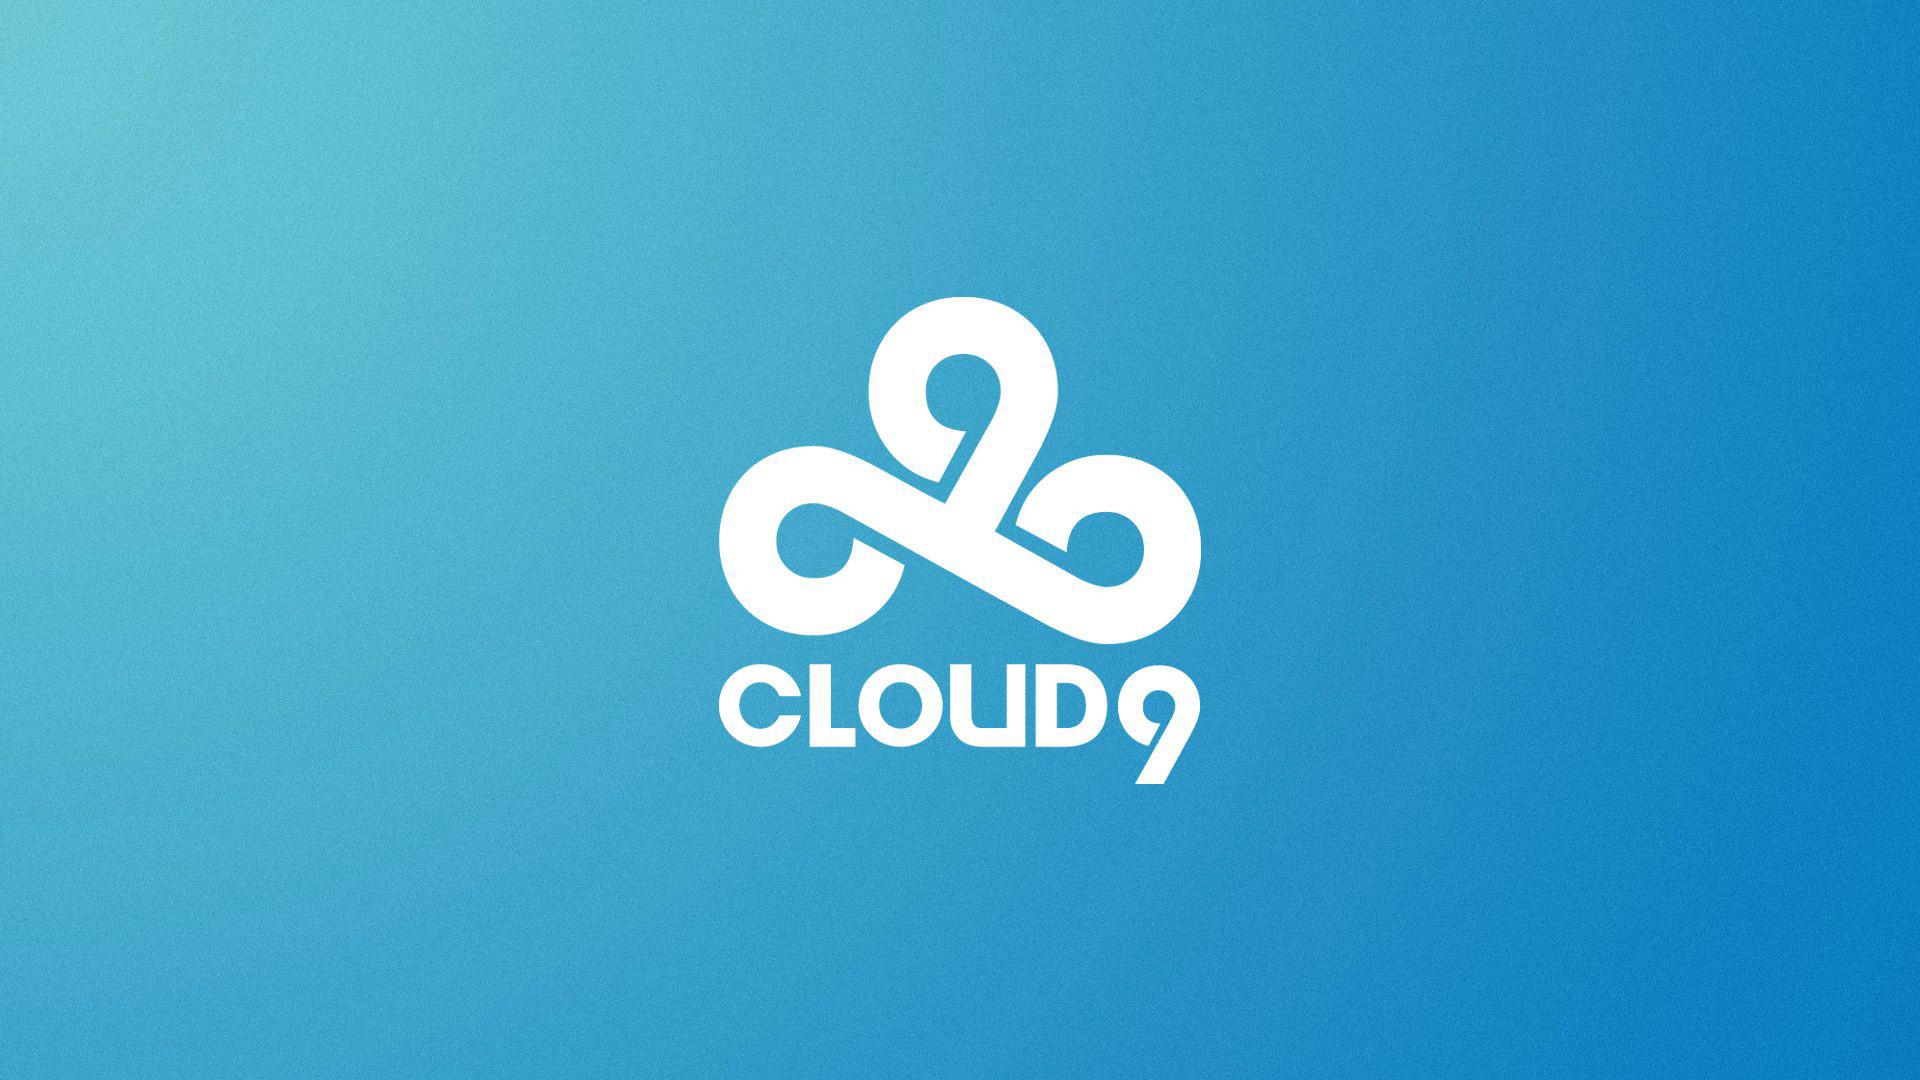 Cloud 9 Csgo HD Wallpaper